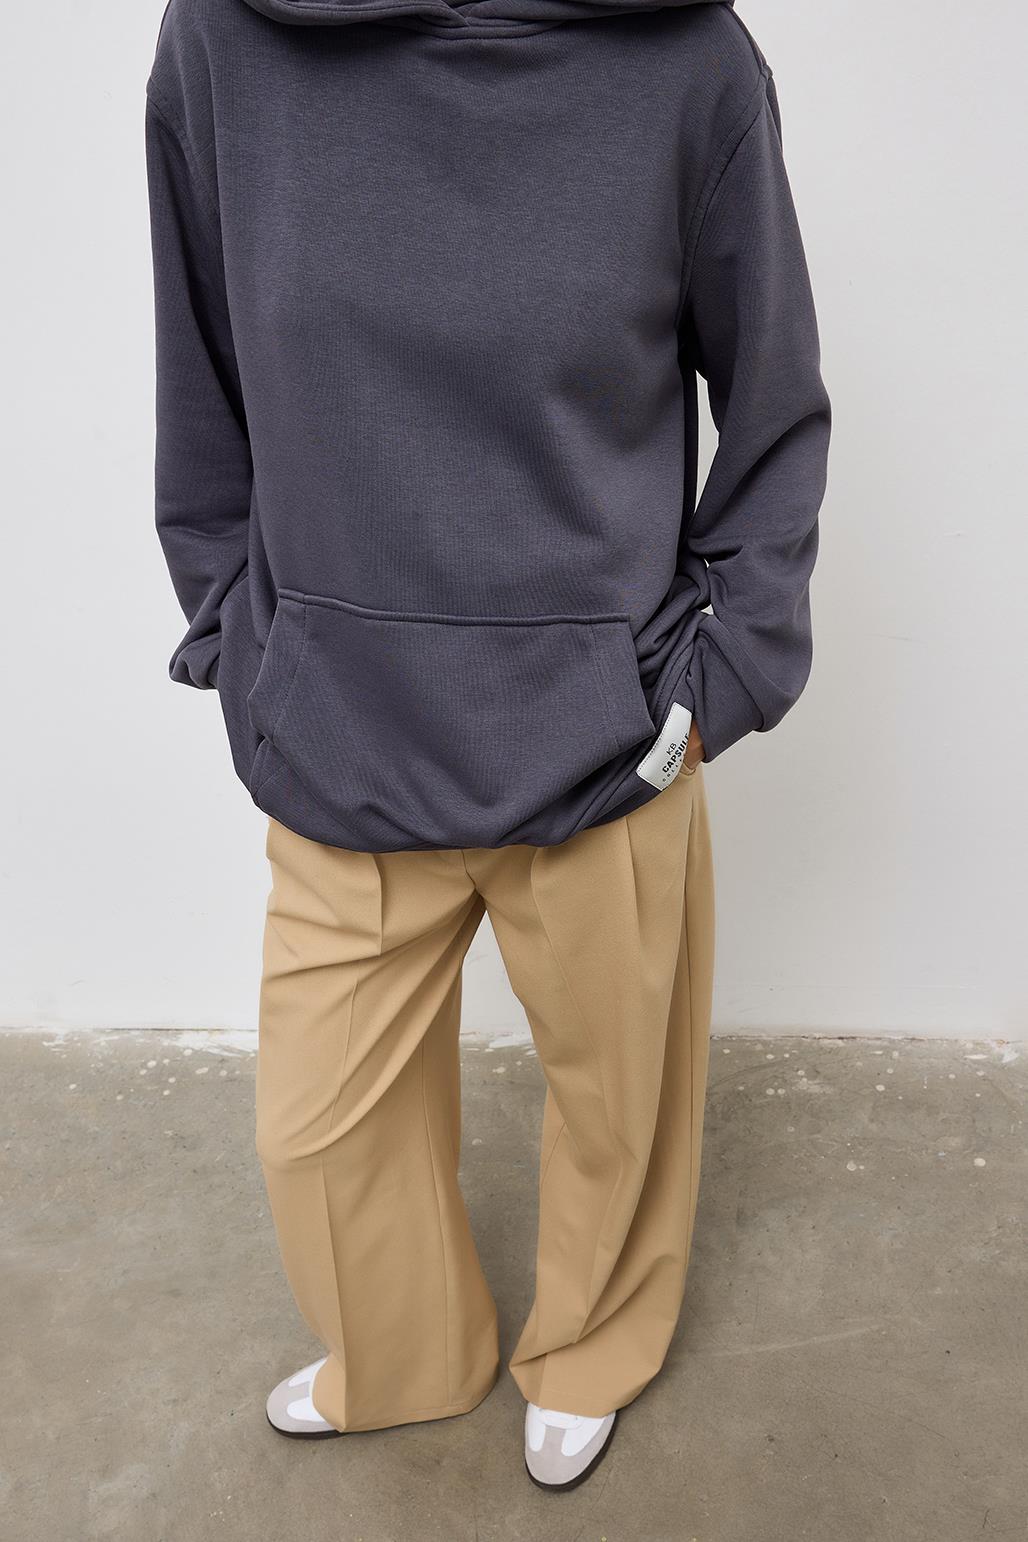 Fleece Hooded Sweatshirt With Pocket Anthracite